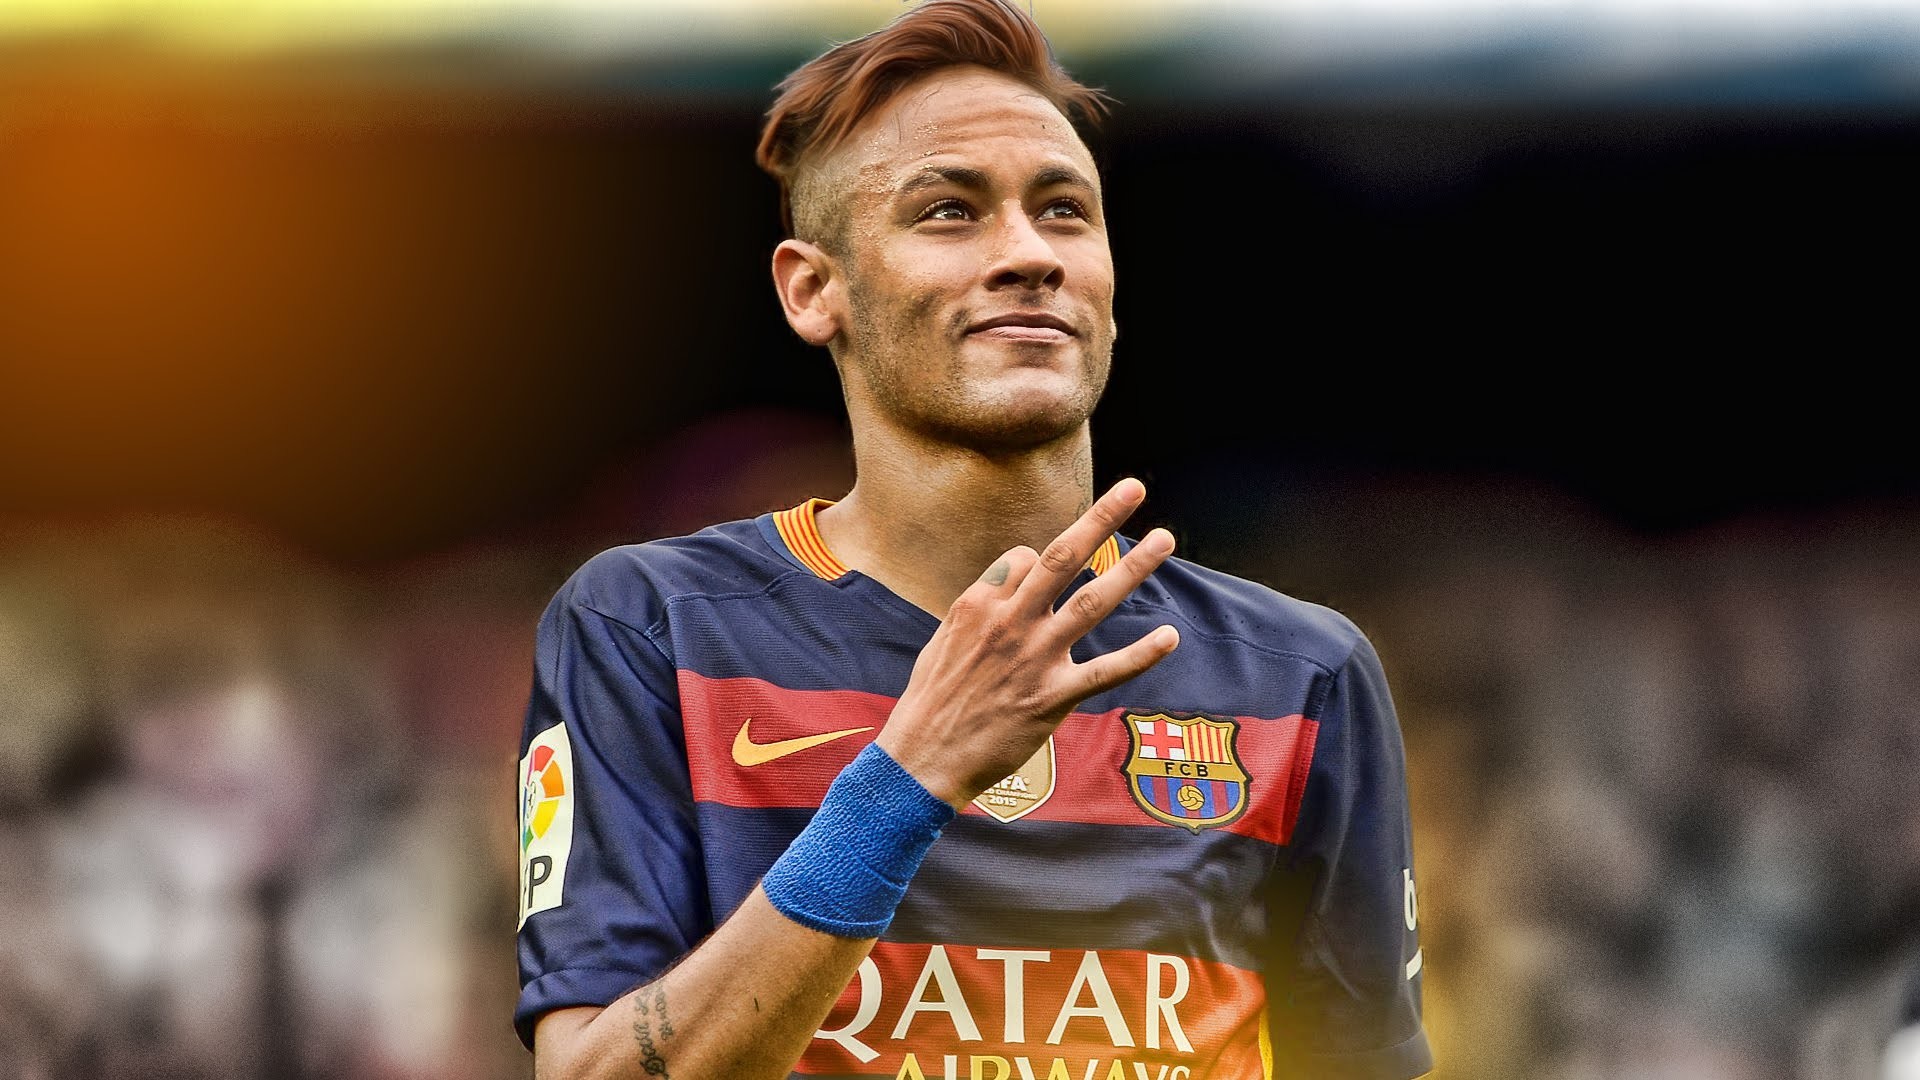 neymar best wallpaper,football player,soccer player,player,cricketer,team sport